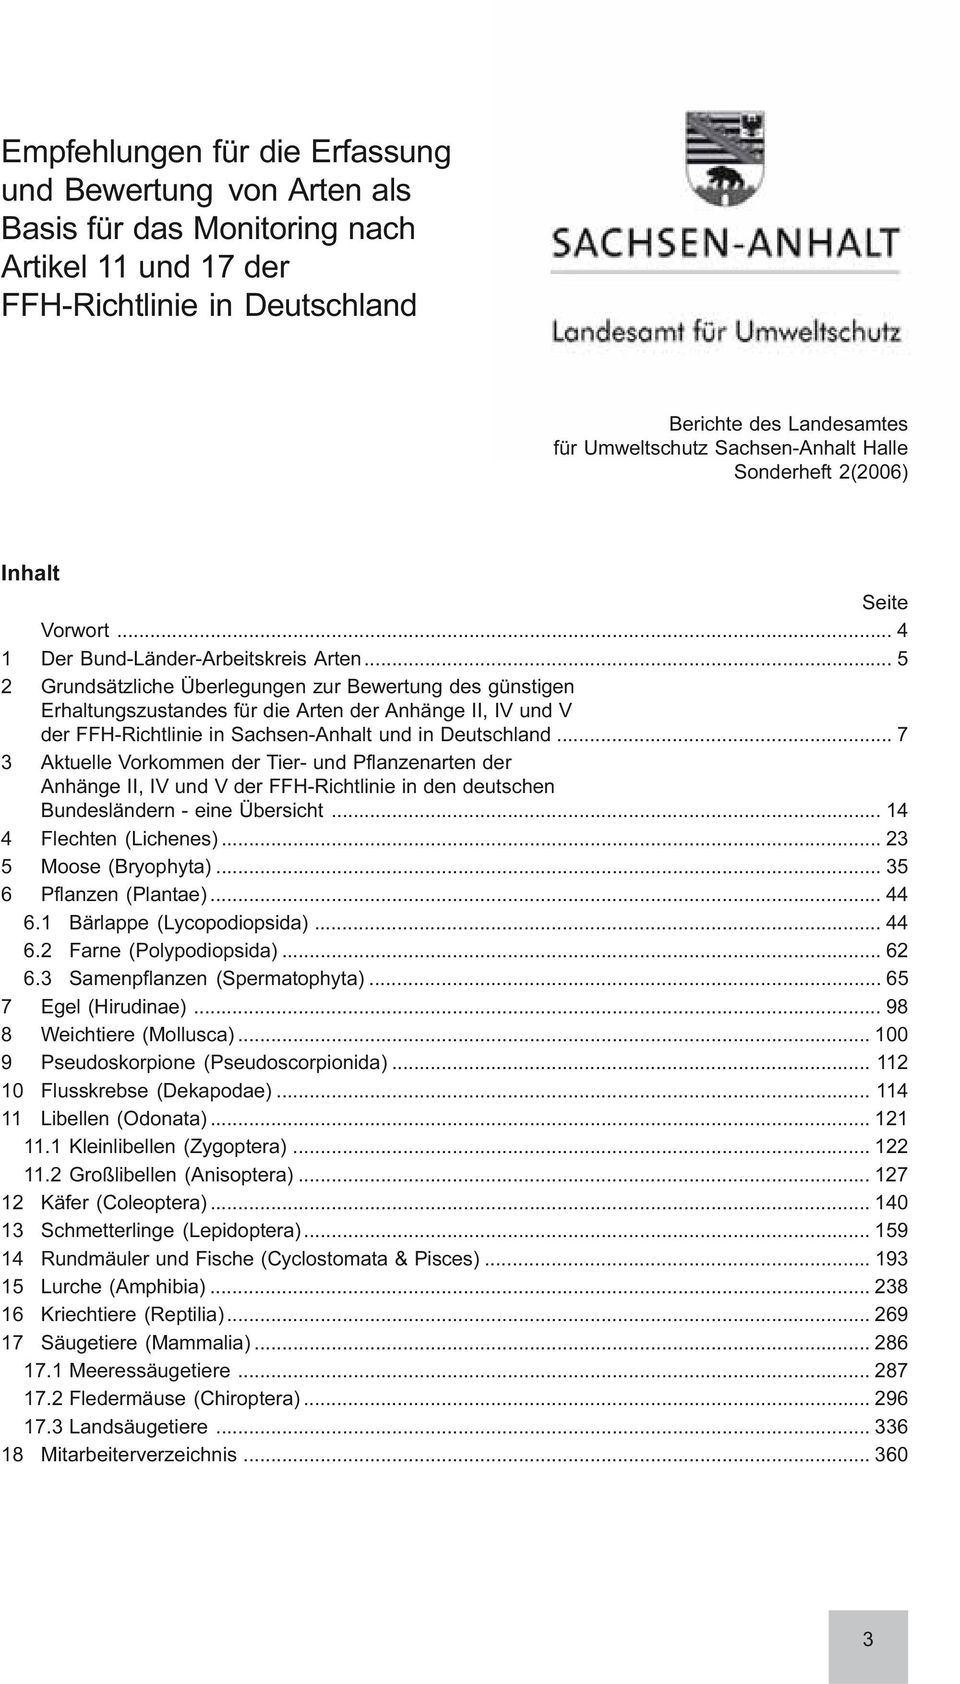 .. 5 2 Grundsätzliche Überlegungen zur Bewertung des günstigen Erhaltungszustandes für die Arten der Anhänge II, IV und V der FFH-Richtlinie in Sachsen-Anhalt und in Deutschland.